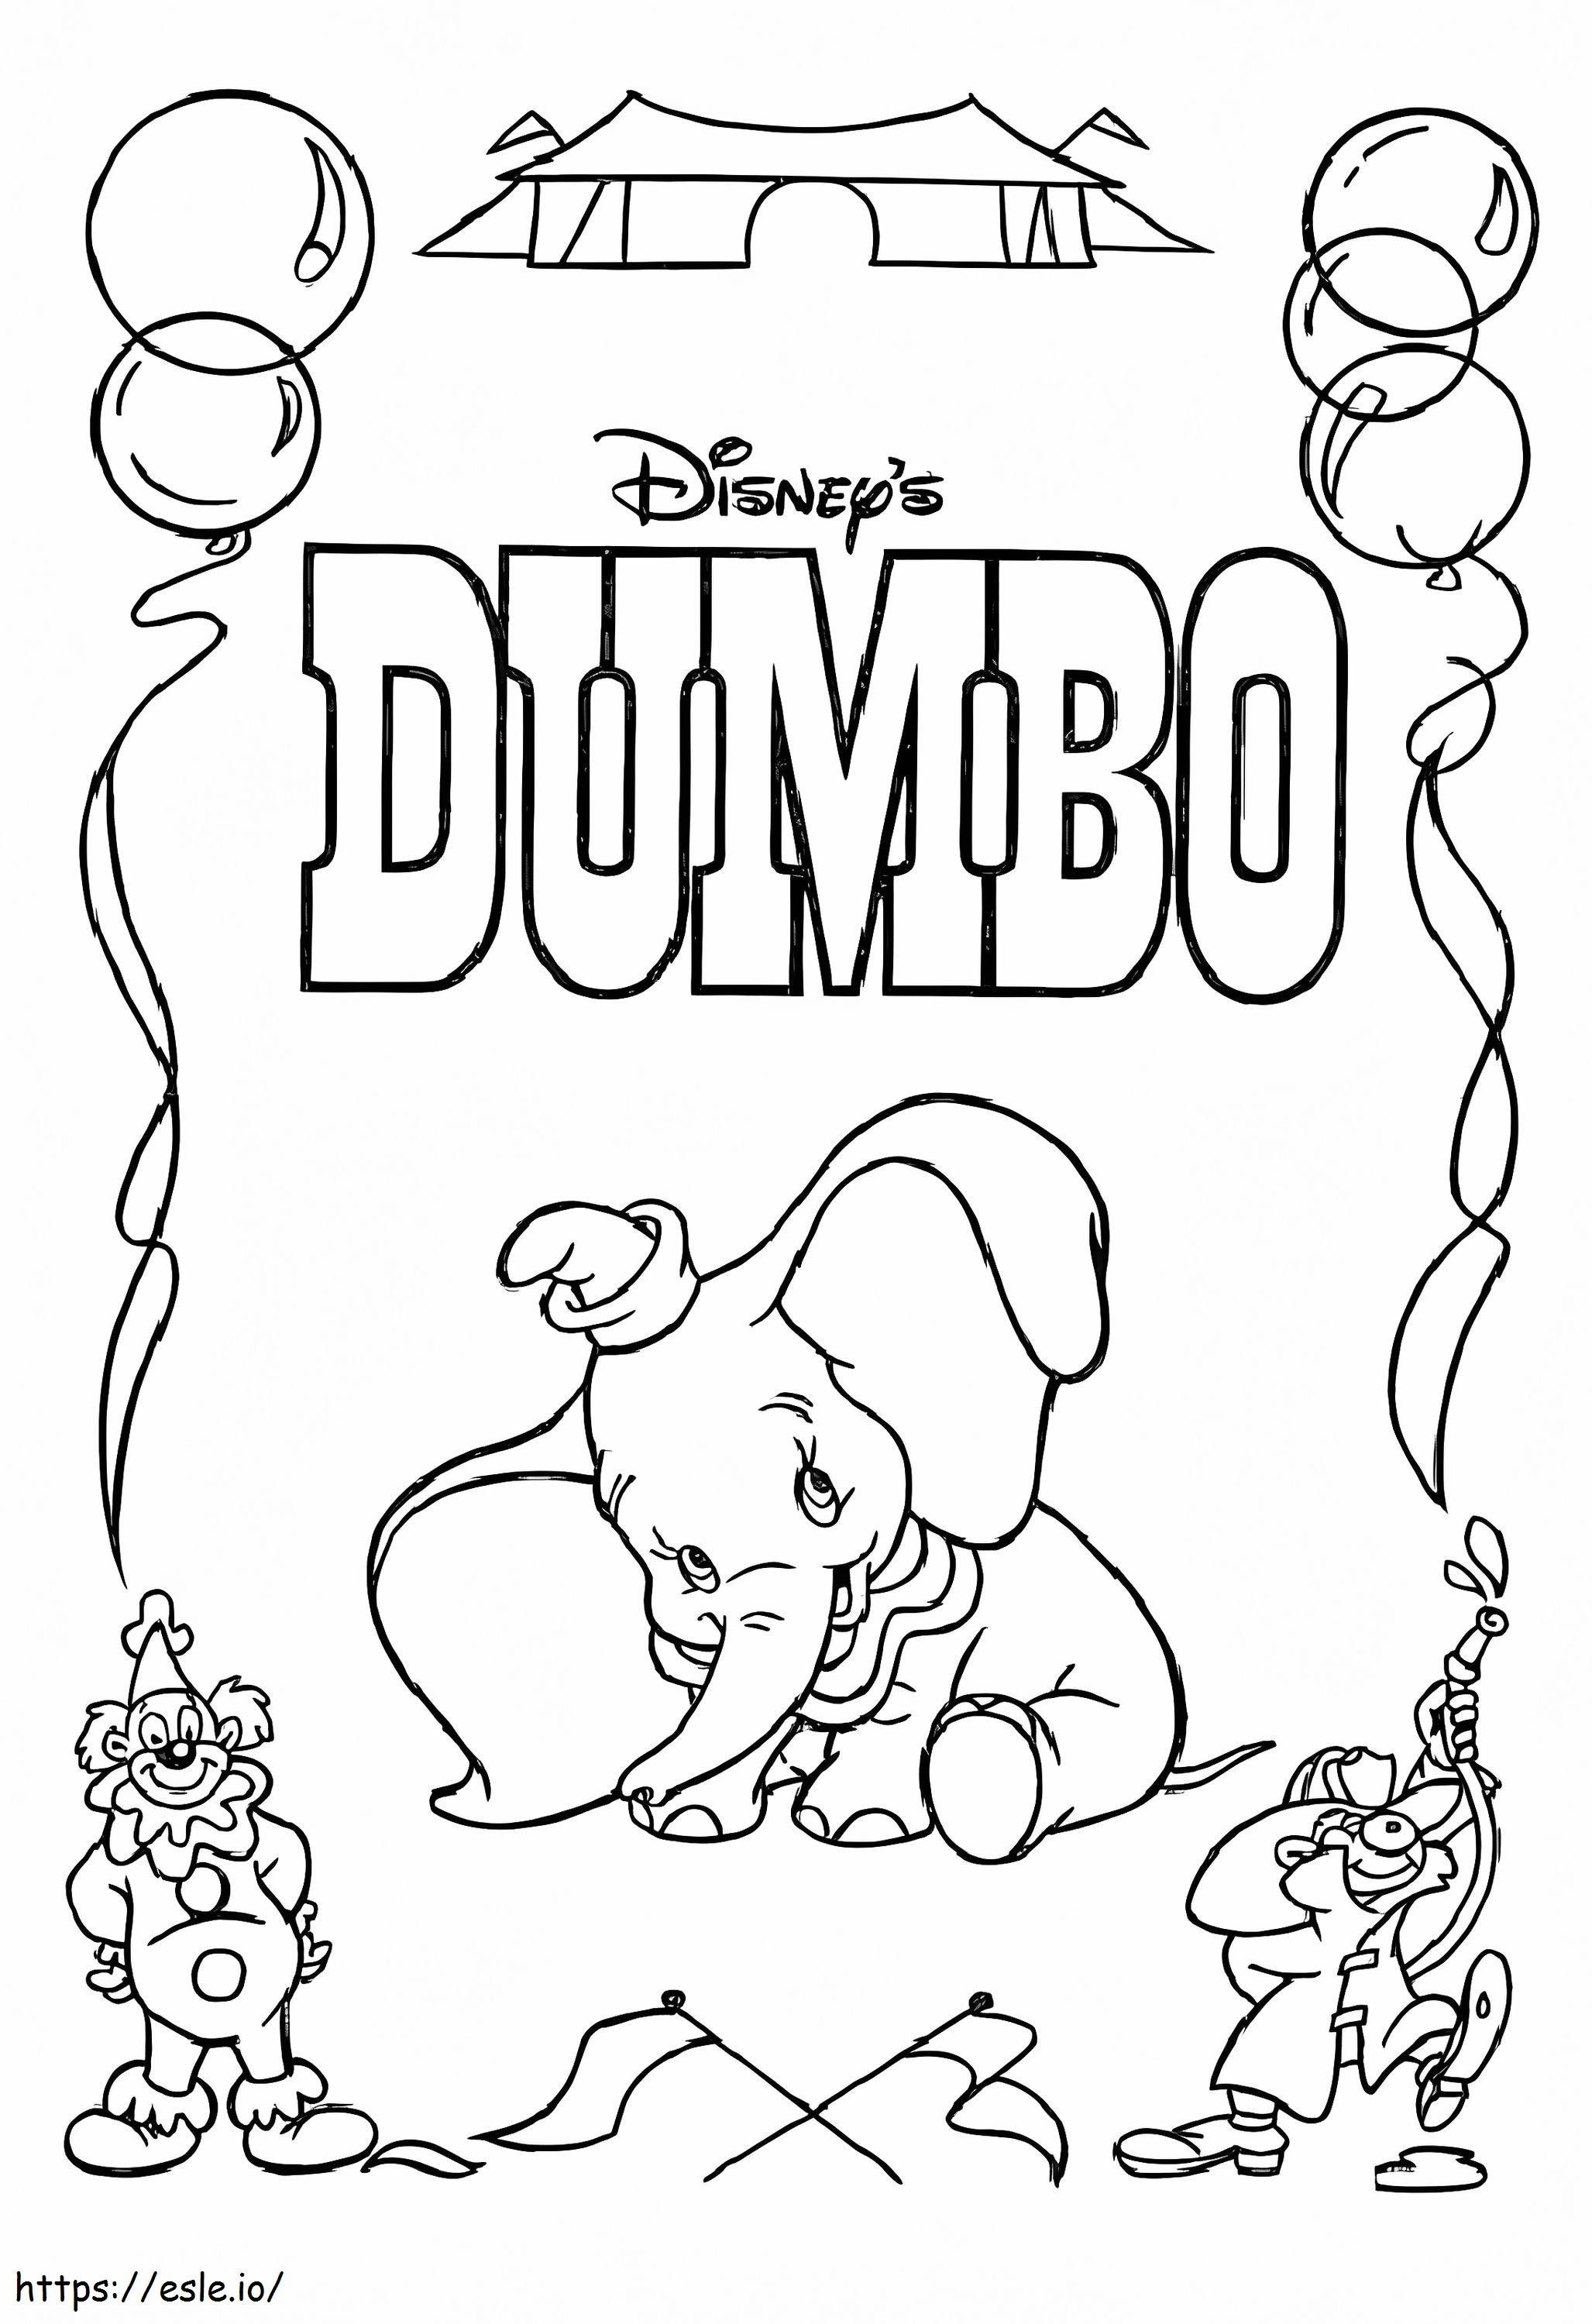 Dumbo Mignon 1 ausmalbilder